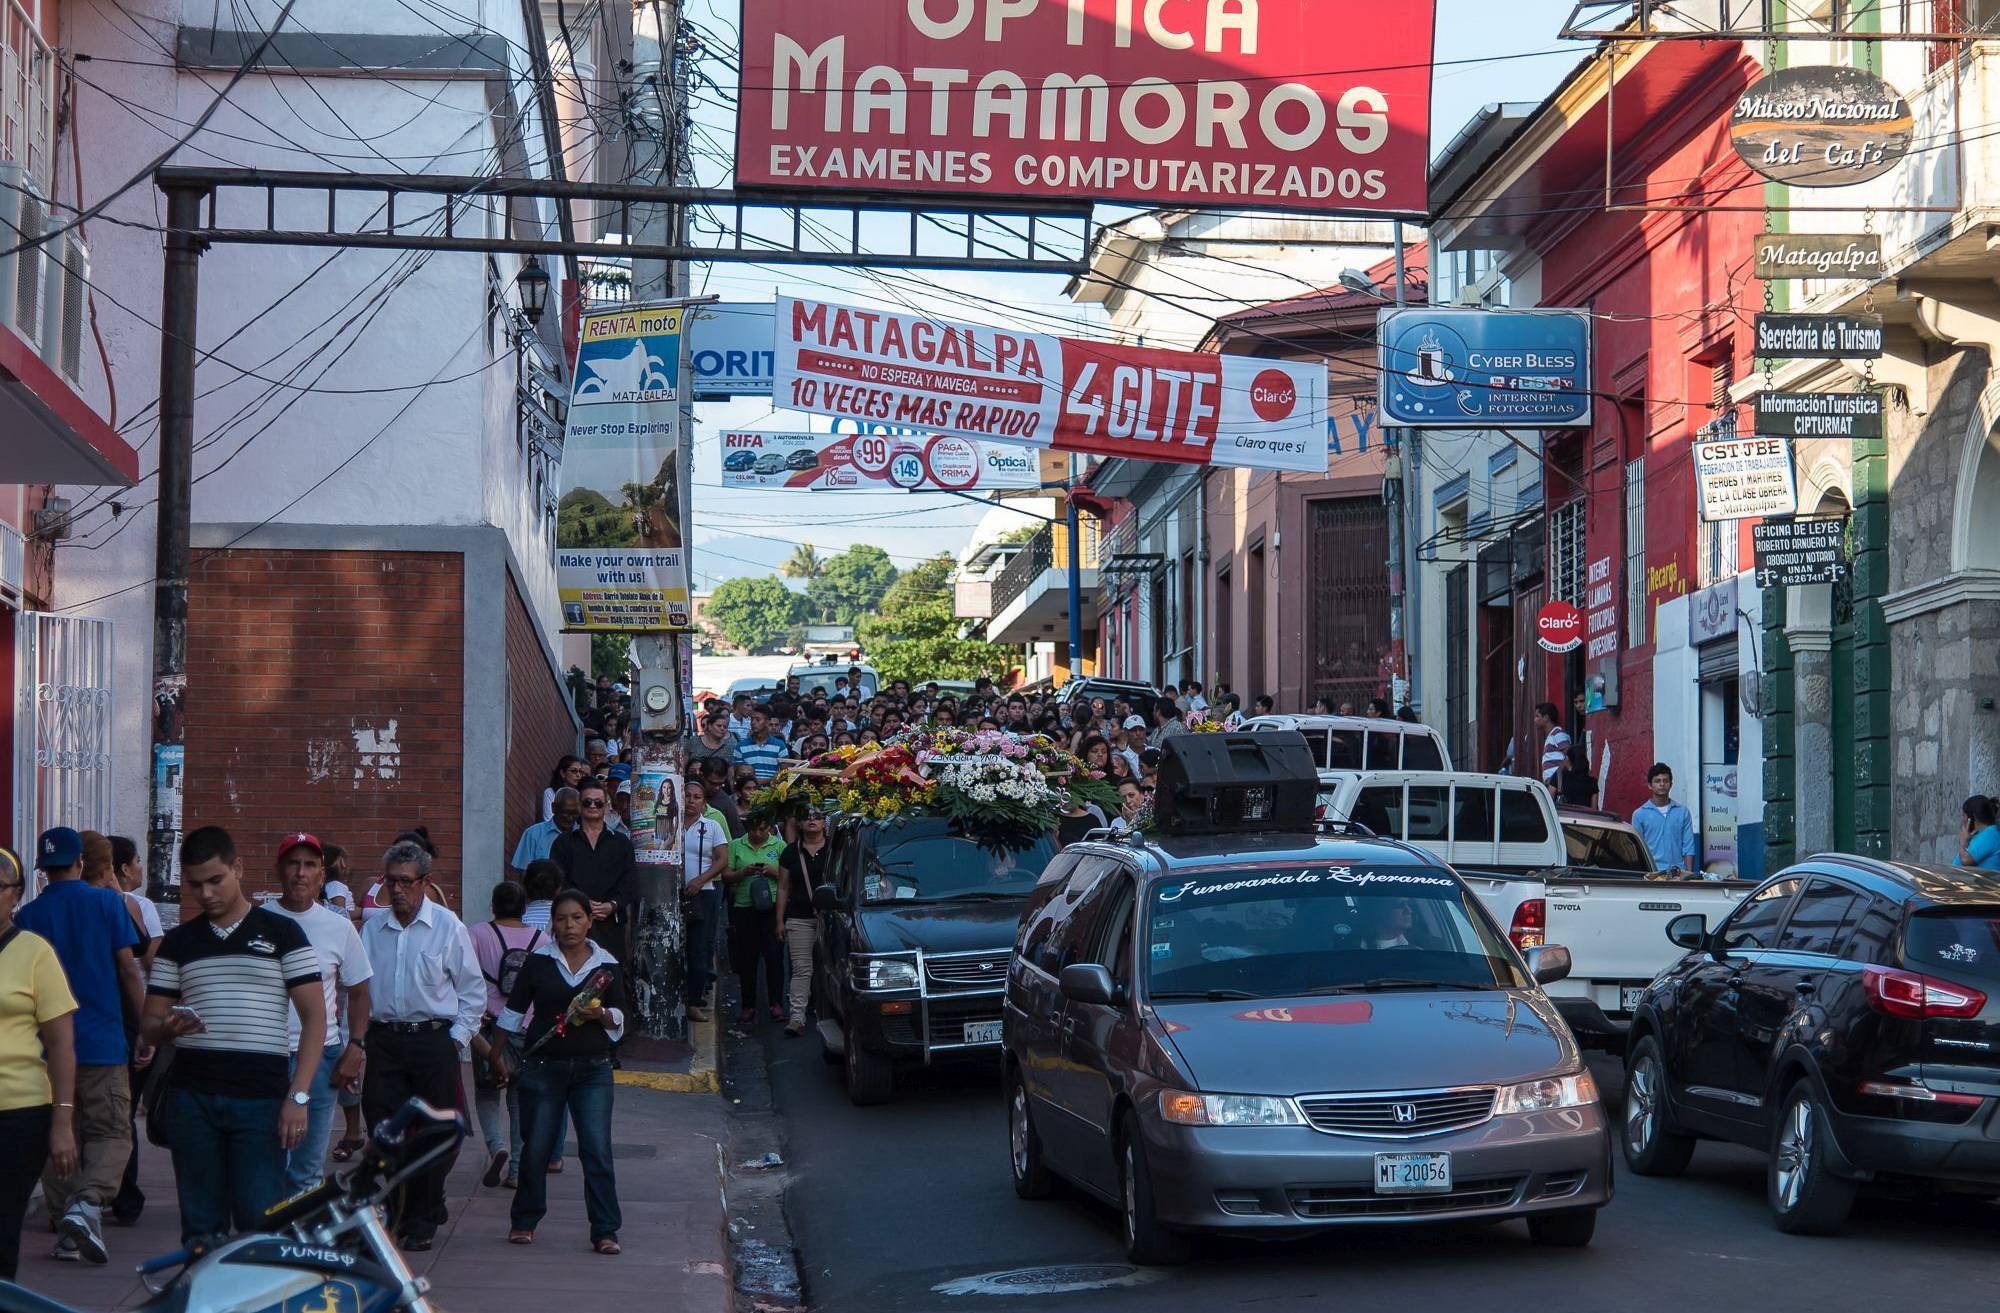  Volle Straßen, volle Plätze, volle Marktplätze - das ist in Matagalpa völlig selbstverständlich. Wie lange noch?  